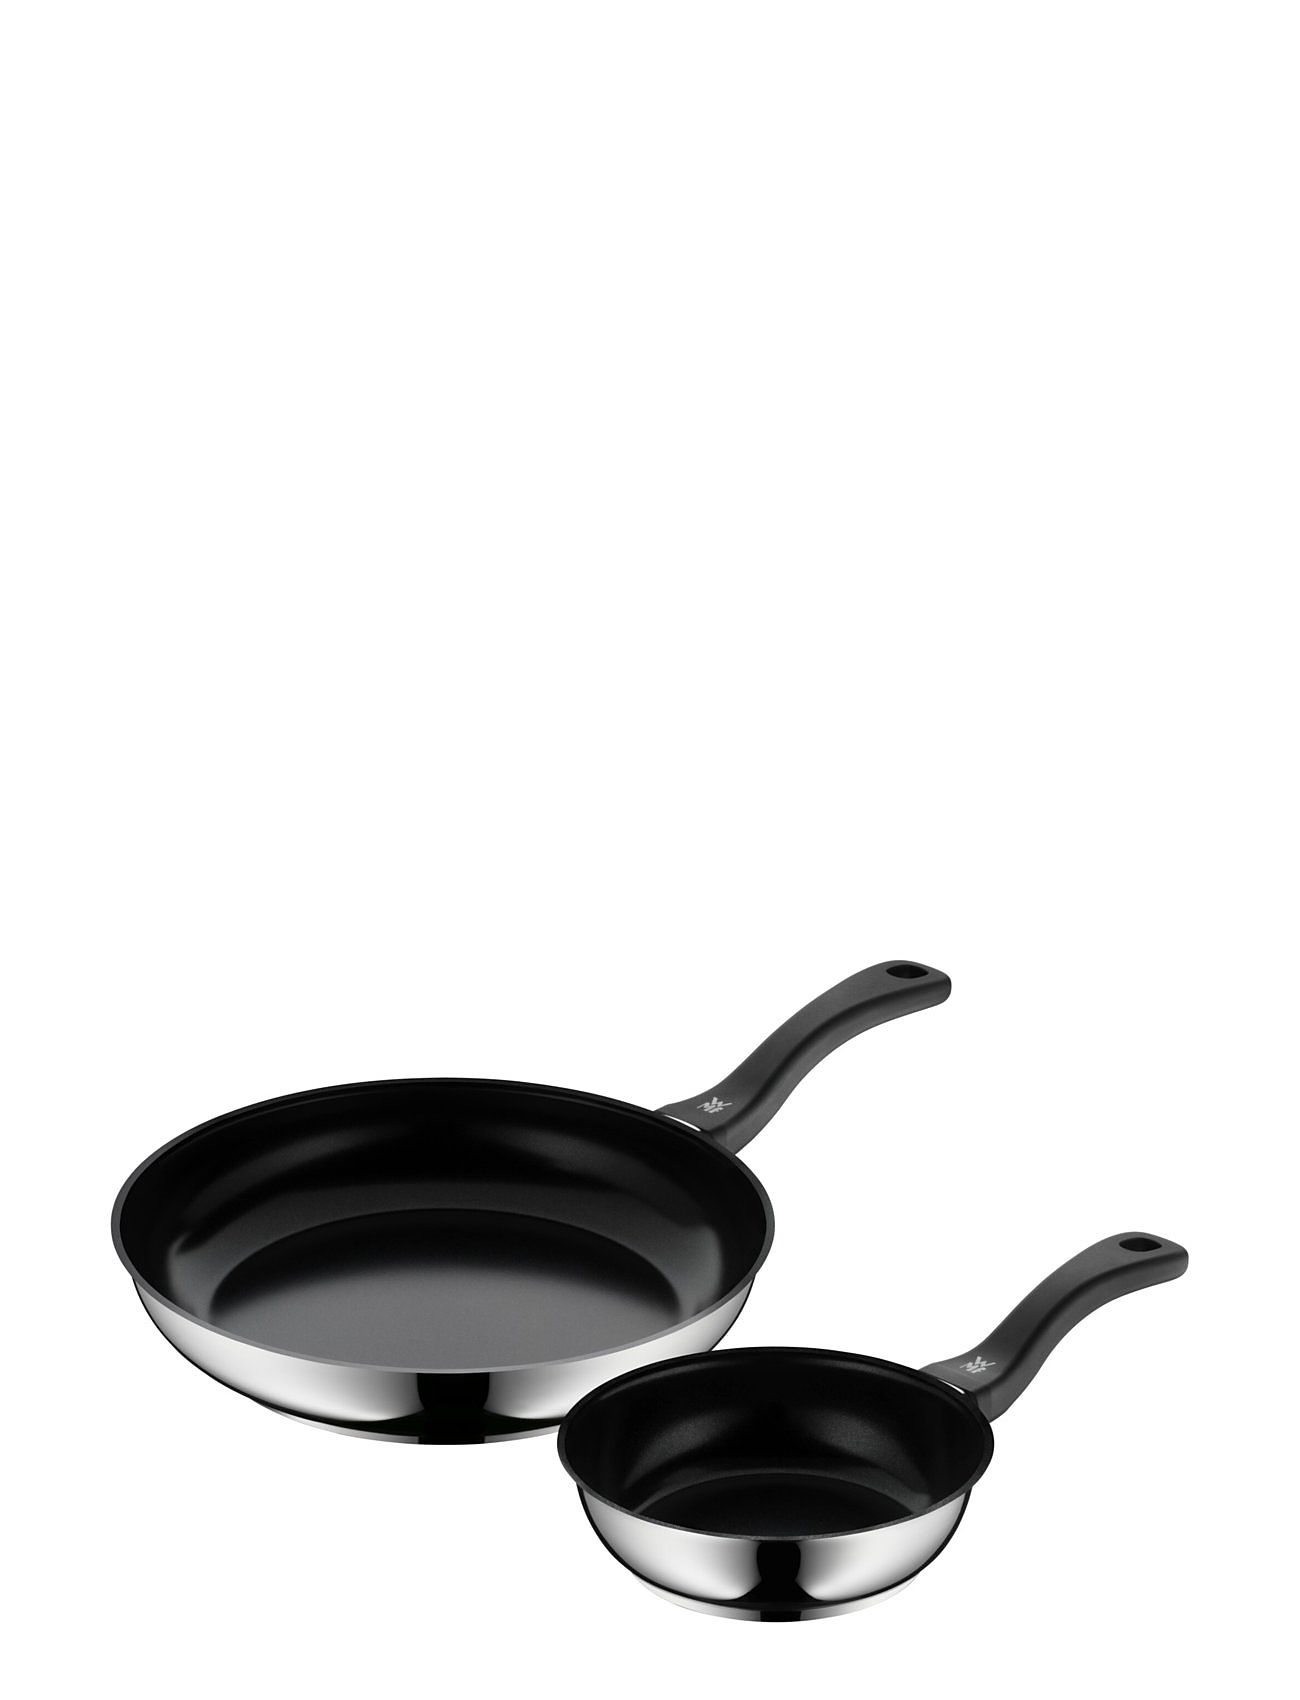 Devil Fry Pan 18+28 Cm Set, Bakelite Handle Home Kitchen Pots & Pans Frying Pans Black WMF